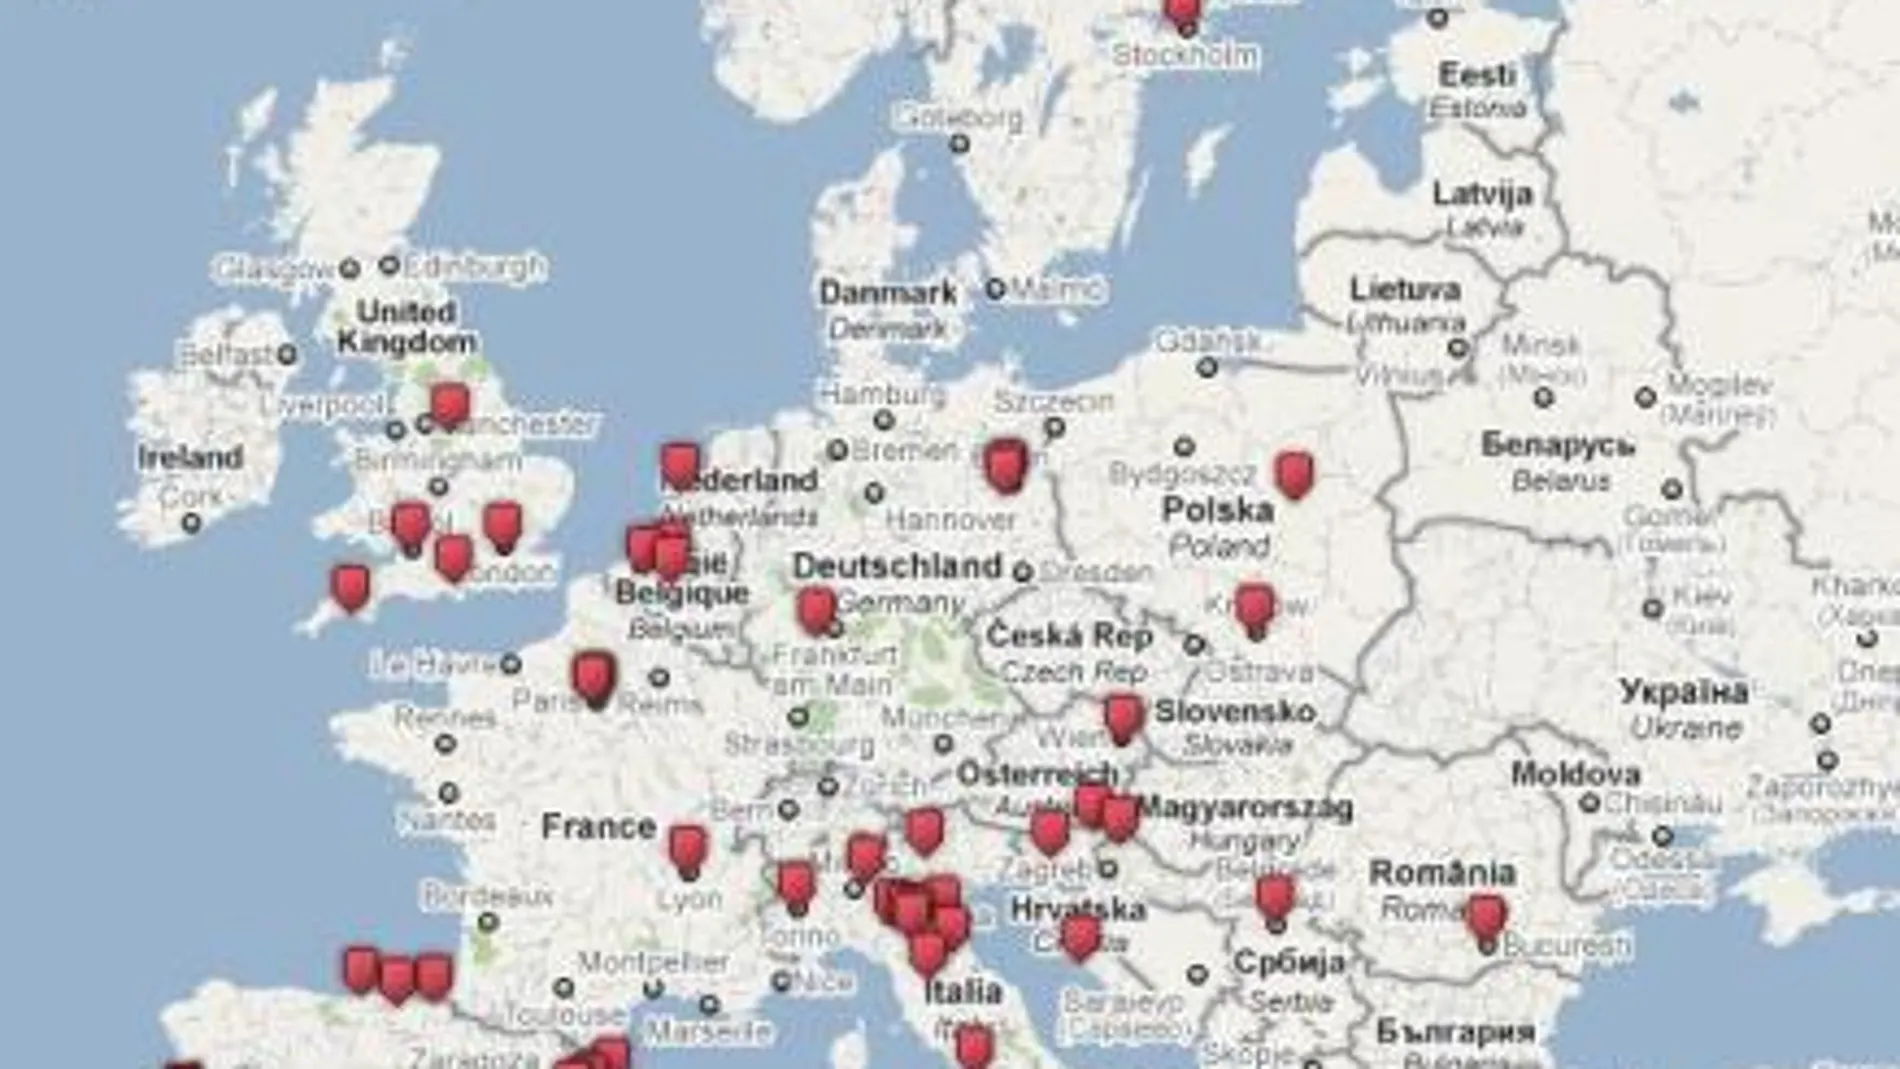 Mapa de la ruta de los cementerios más turísticos de Europa